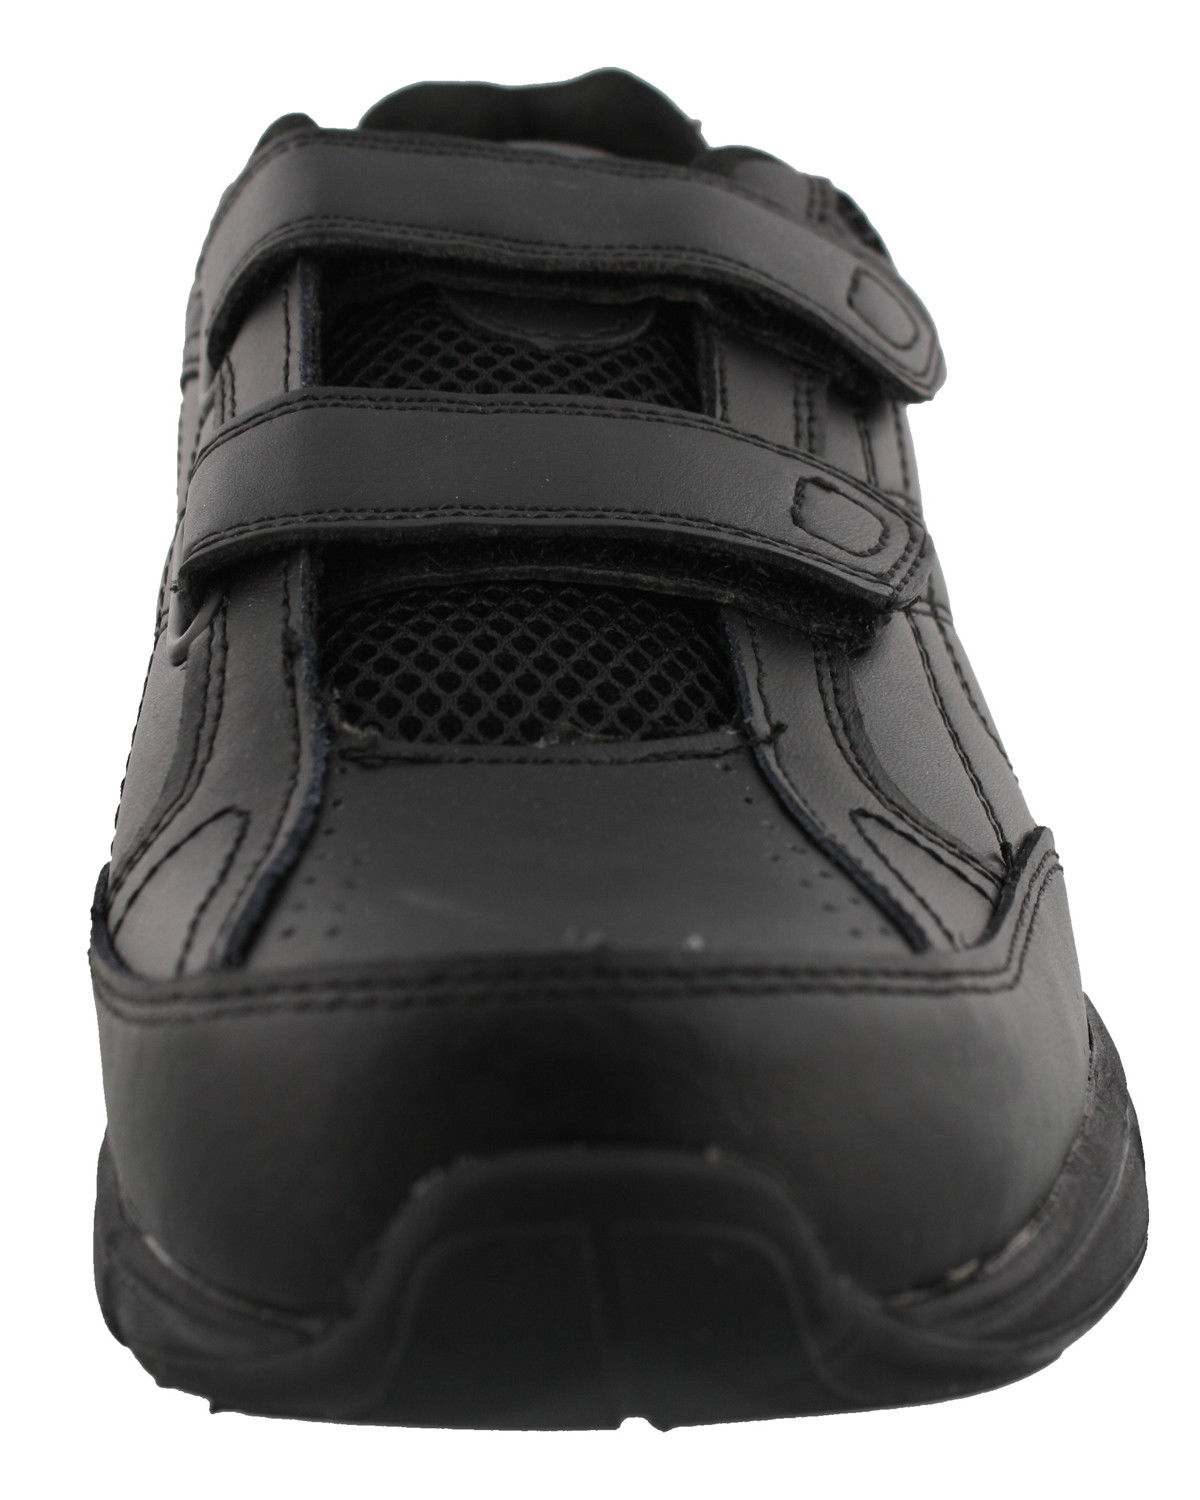 Dr. Scholl's Men's Brisk Sneakers, Wide Width - image 4 of 5